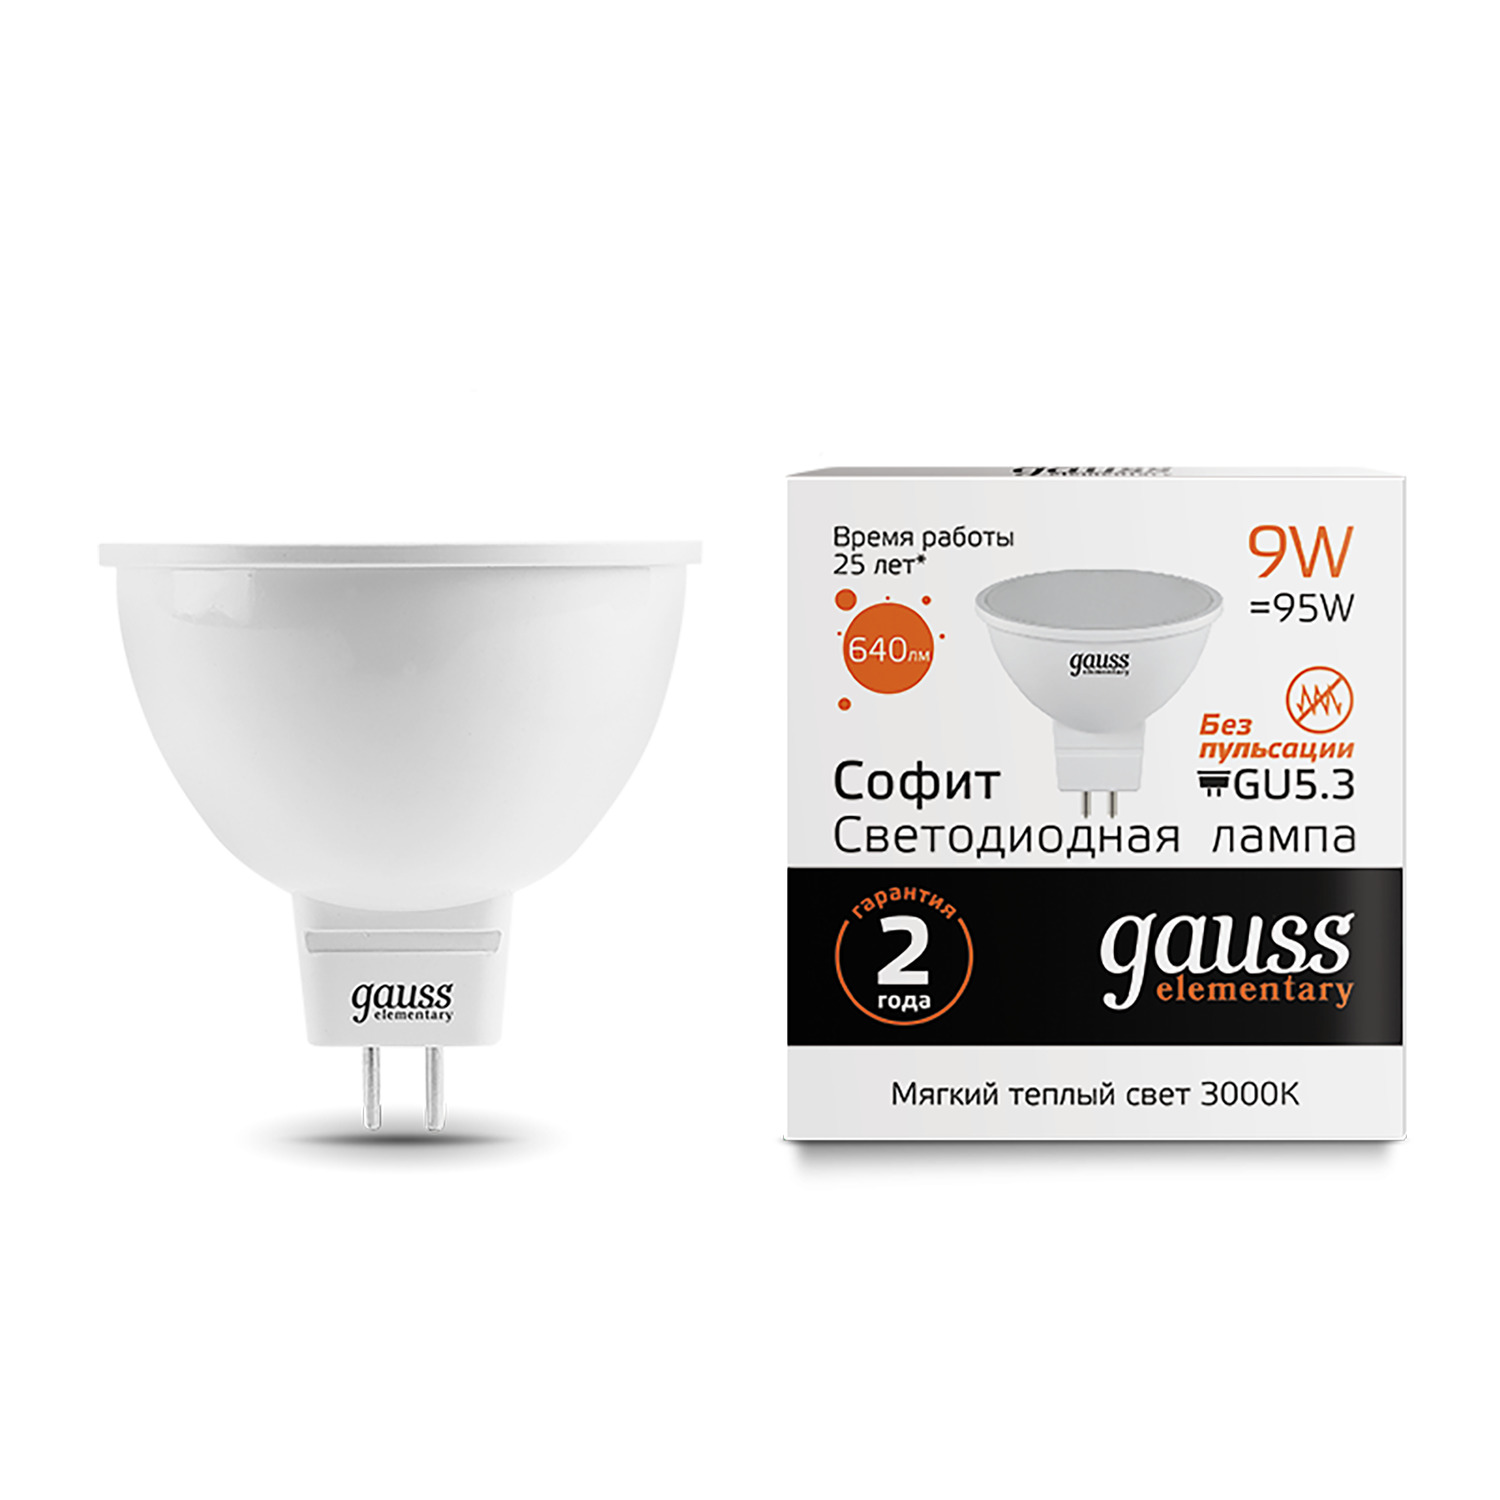 Лампа Gauss LED Elementary MR16 GU5.3 9W 3000K лампочка gauss 13527 elementary mr16